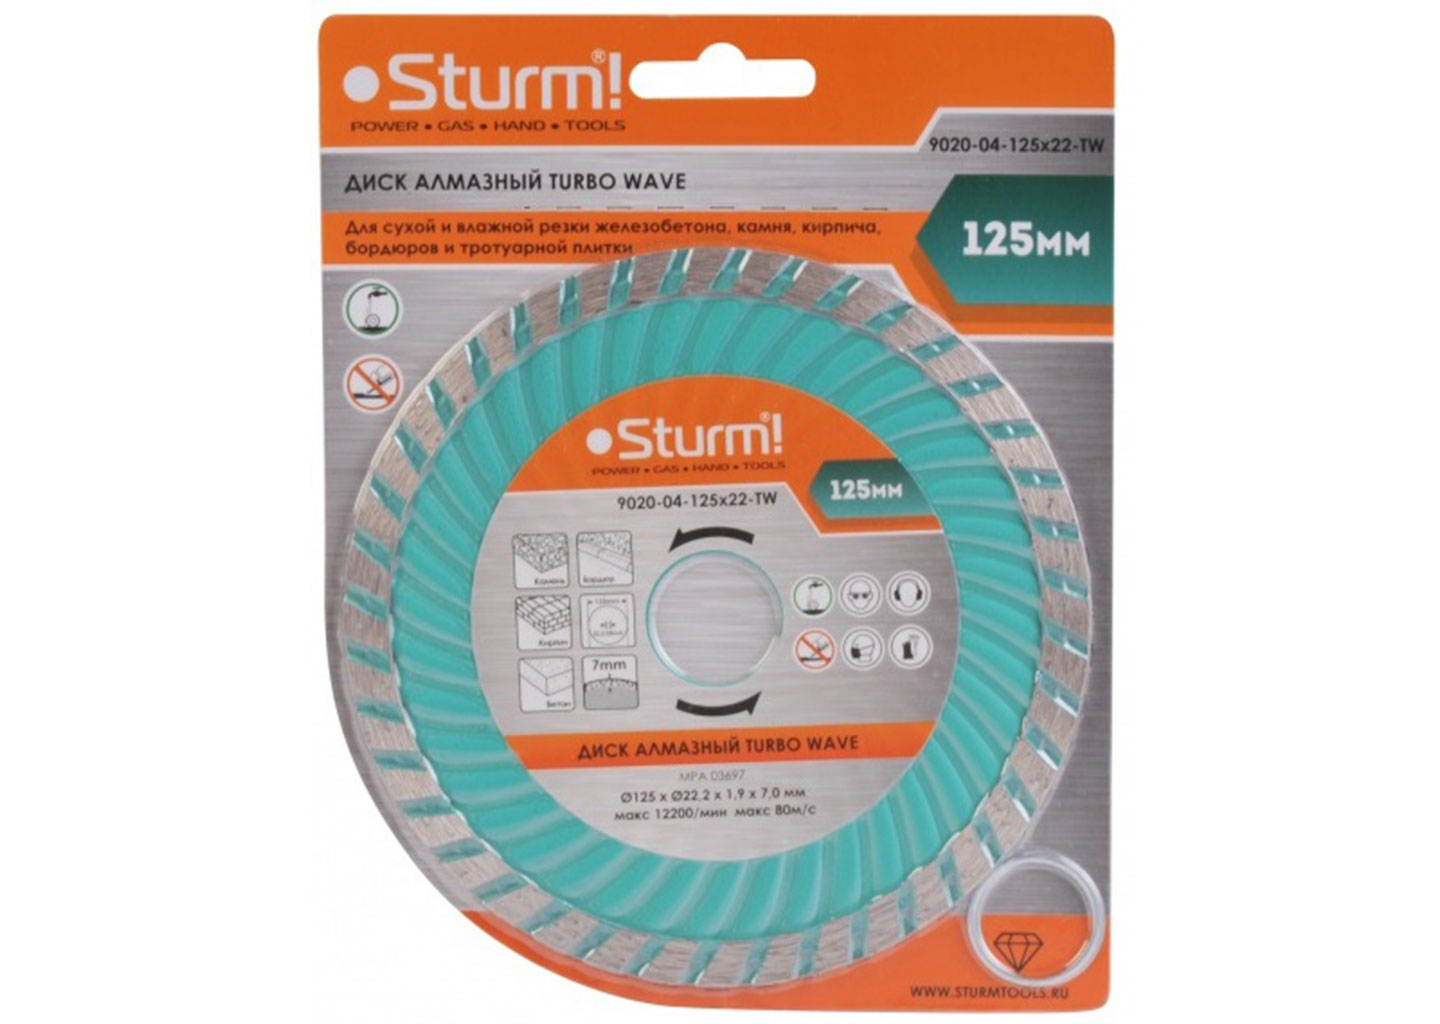 Алмазный диск, сухая/влажная резка Turbo Wave (125х22.2 мм), Sturm!  9020-04-125x22-TW